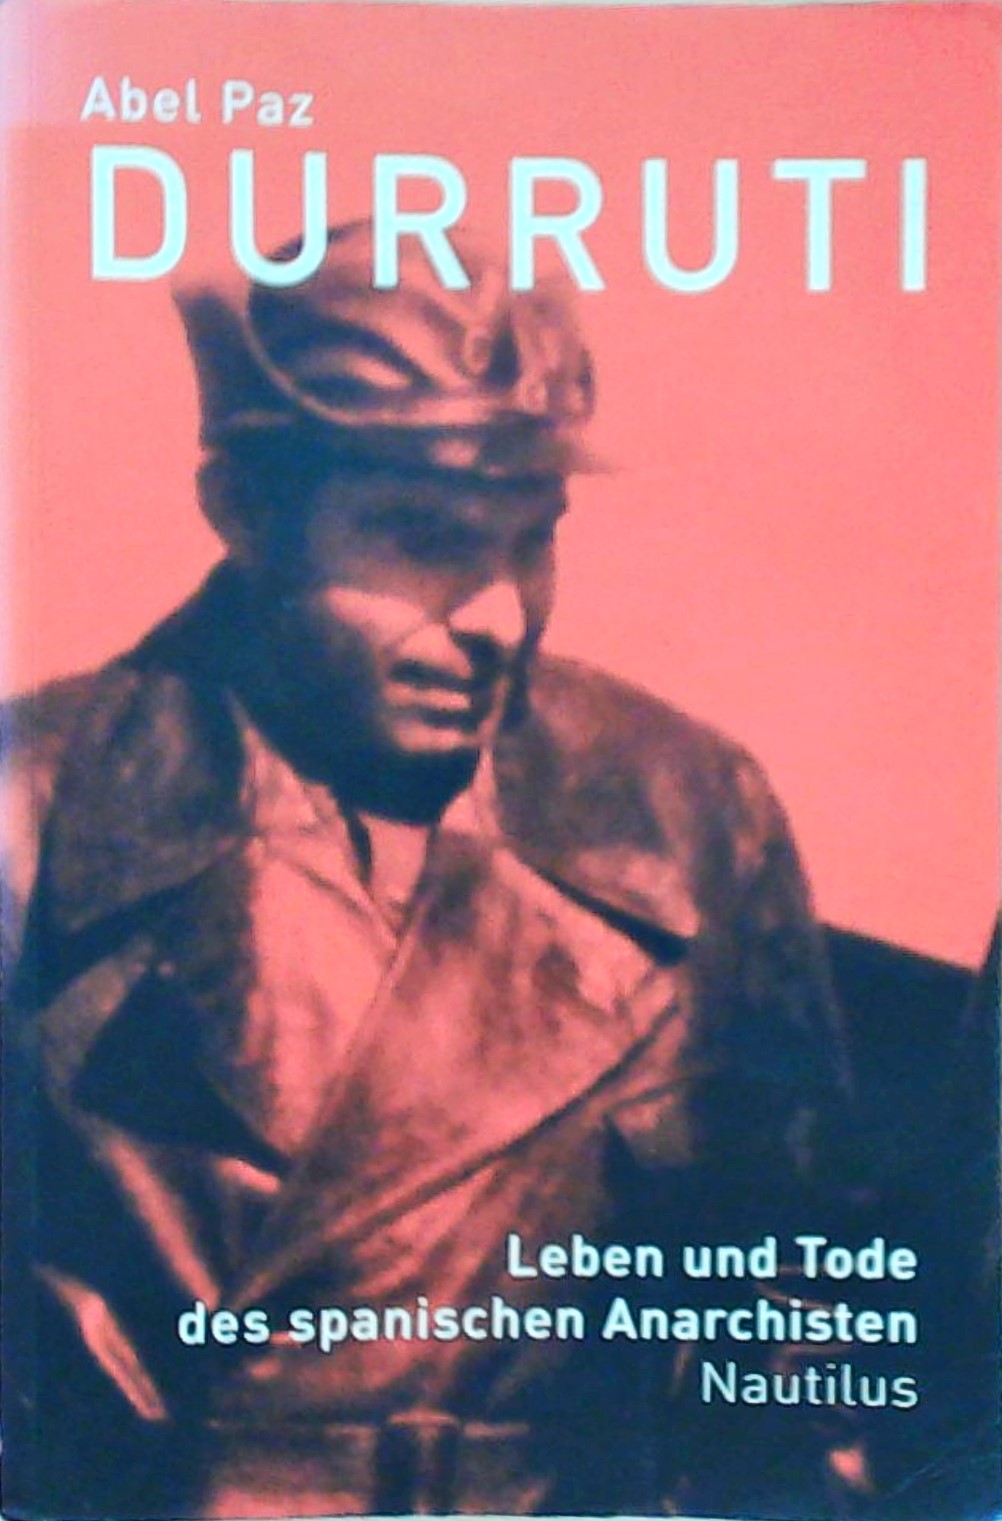 Durruti. Leben und Tod des spanischen Anarchisten: Biographie Leben und Tode des spanischen Anarchisten - Paz, Abel und Luis Bredlow